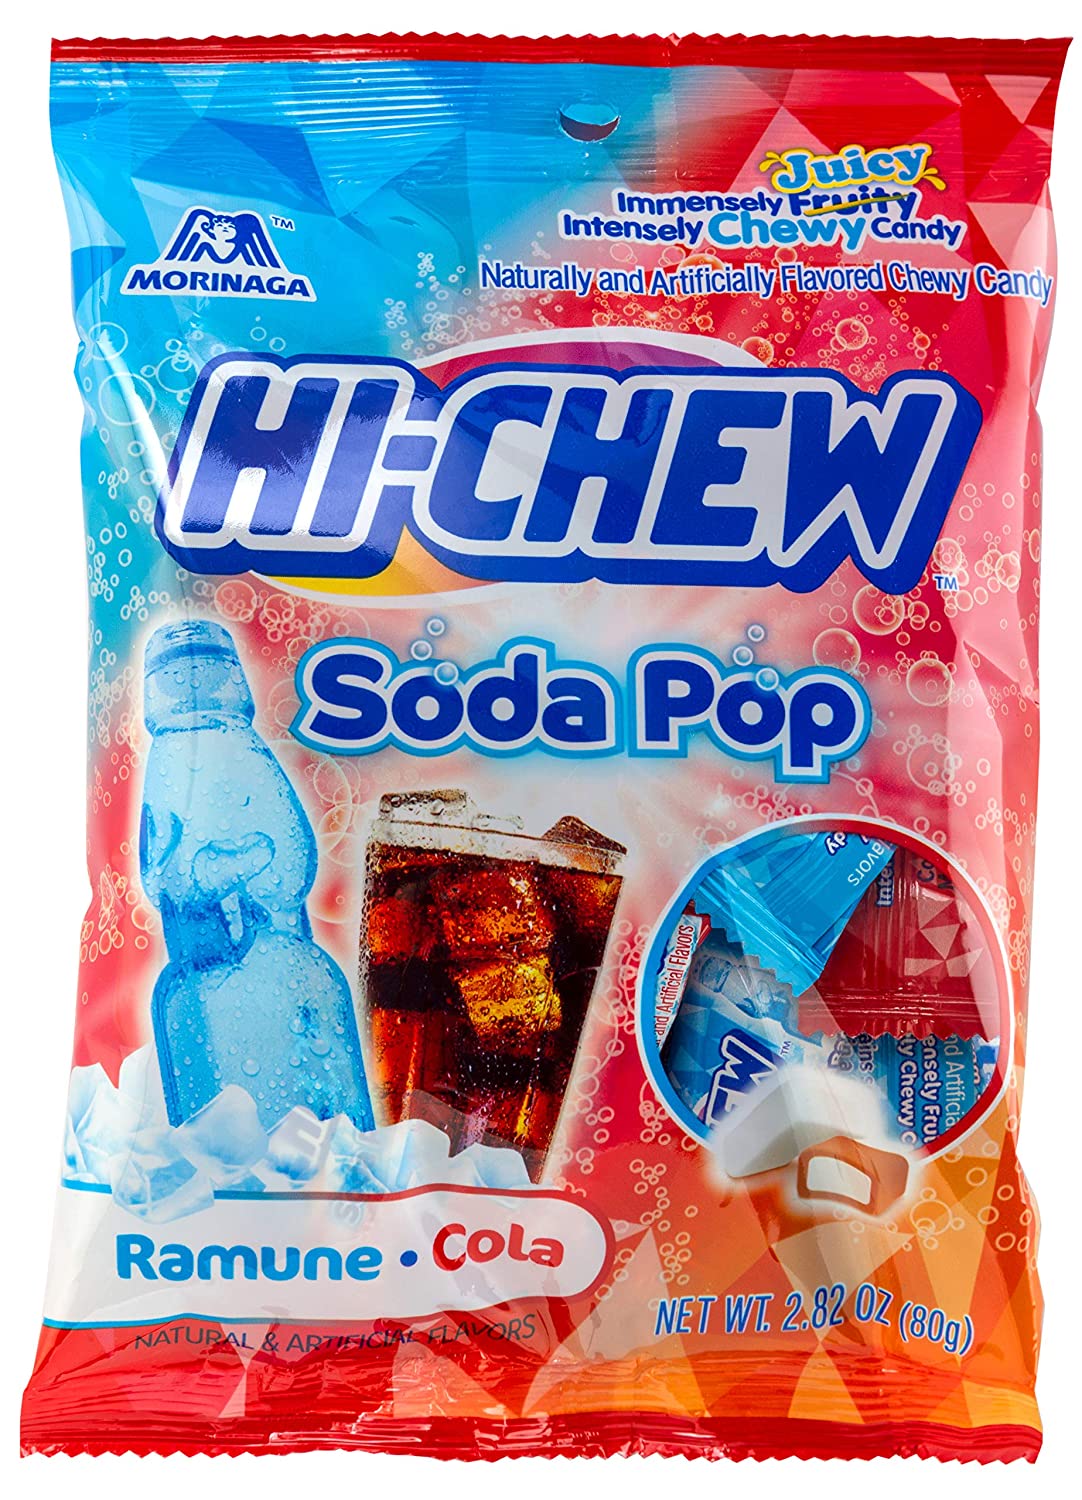 Hi-Chew Soda Pop